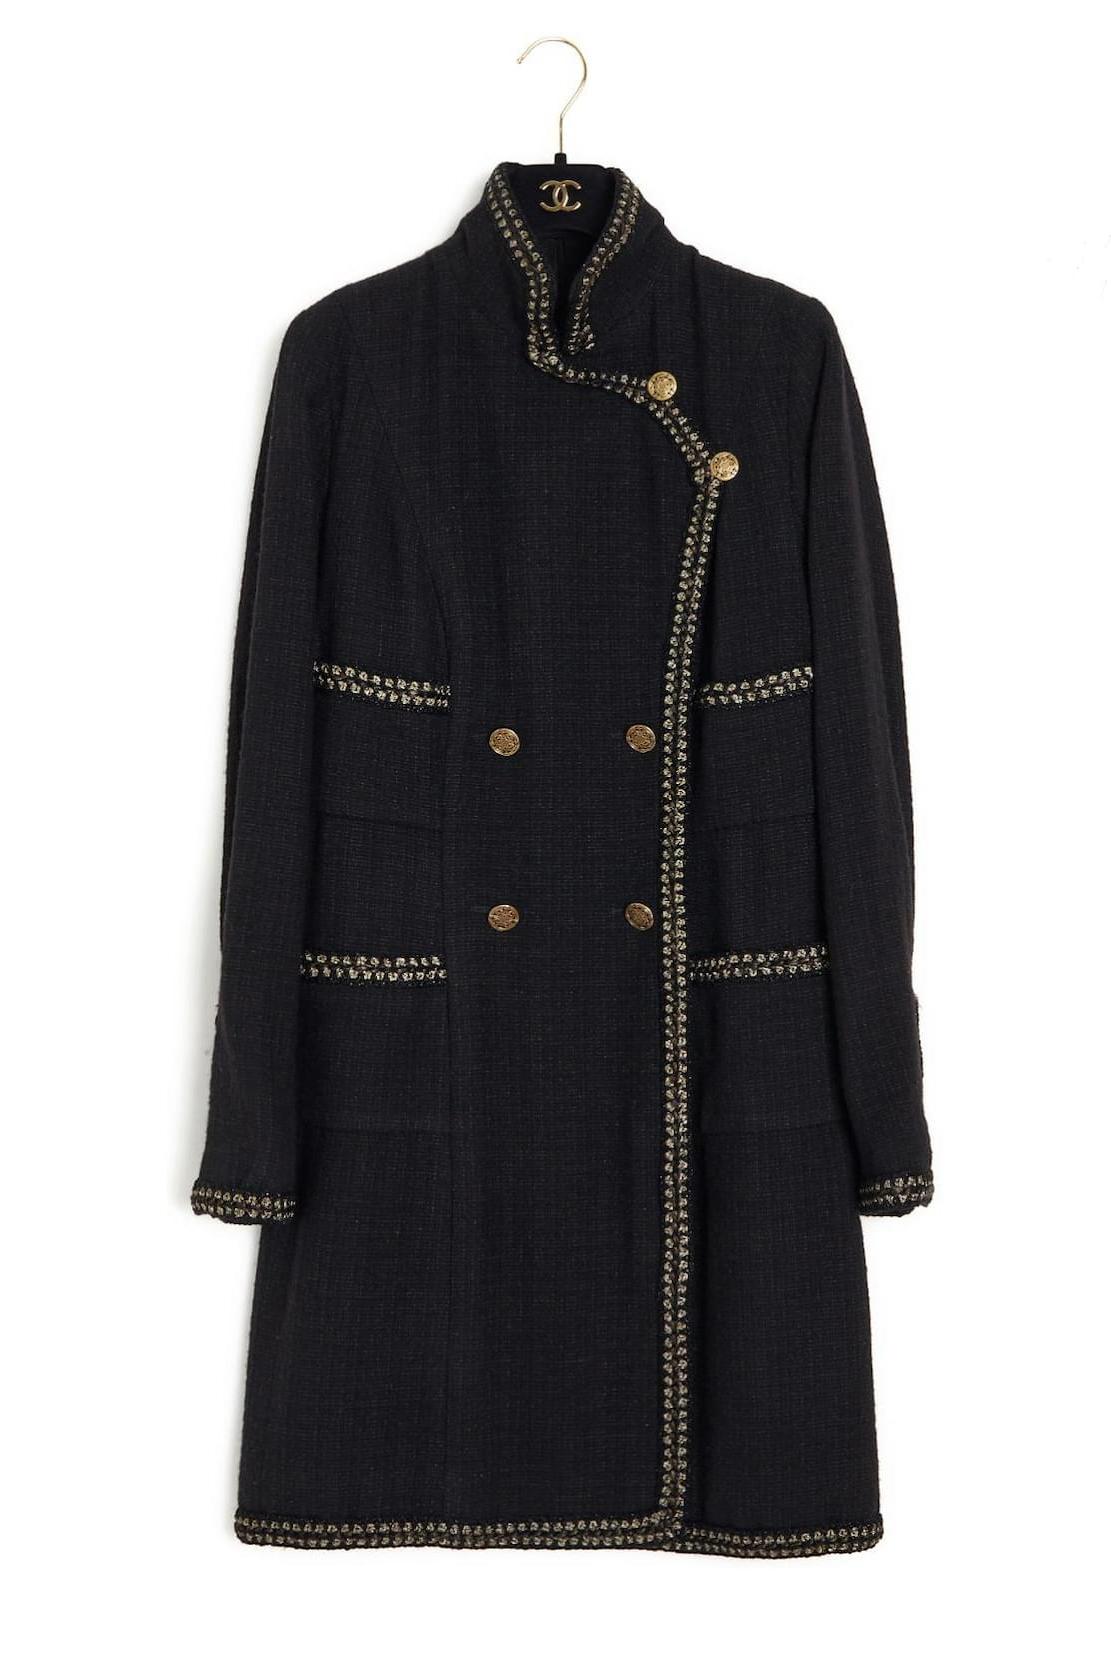 Women's or Men's Chanel 9K$ Collectors Black Tweed Coat / Dress For Sale